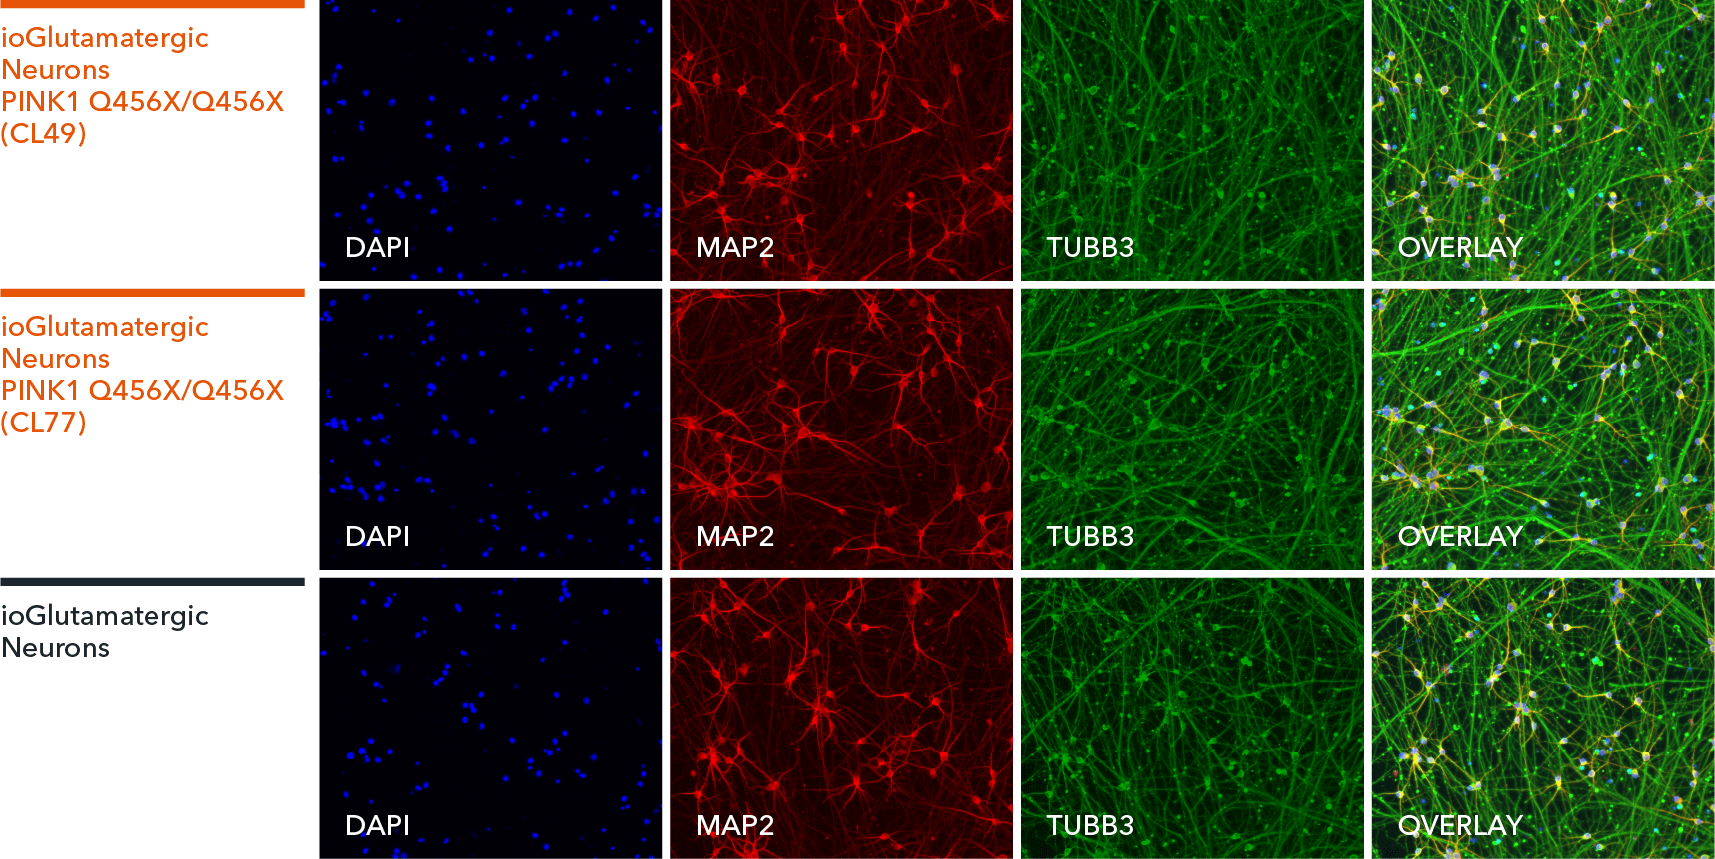 io1075-io1076-ioGlutamatergic Neurons PINK1-Q456X-hom-ICC-MAP2-TUBB3